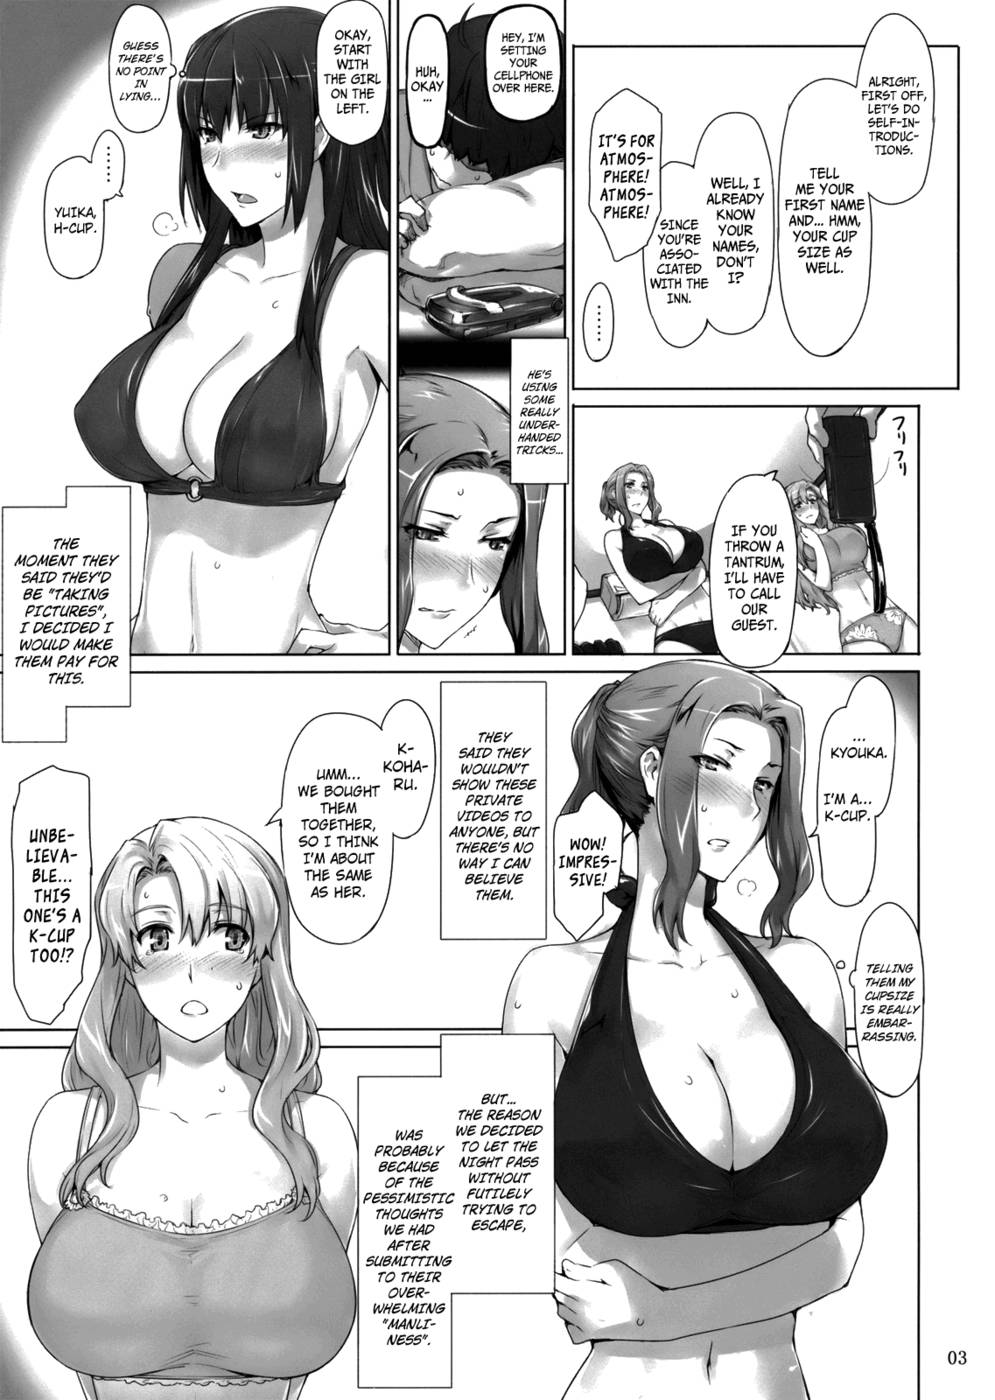 Hentai Manga Comic-Tachibana-san's Circumstances With a Man Supplement-Chapter 1-2